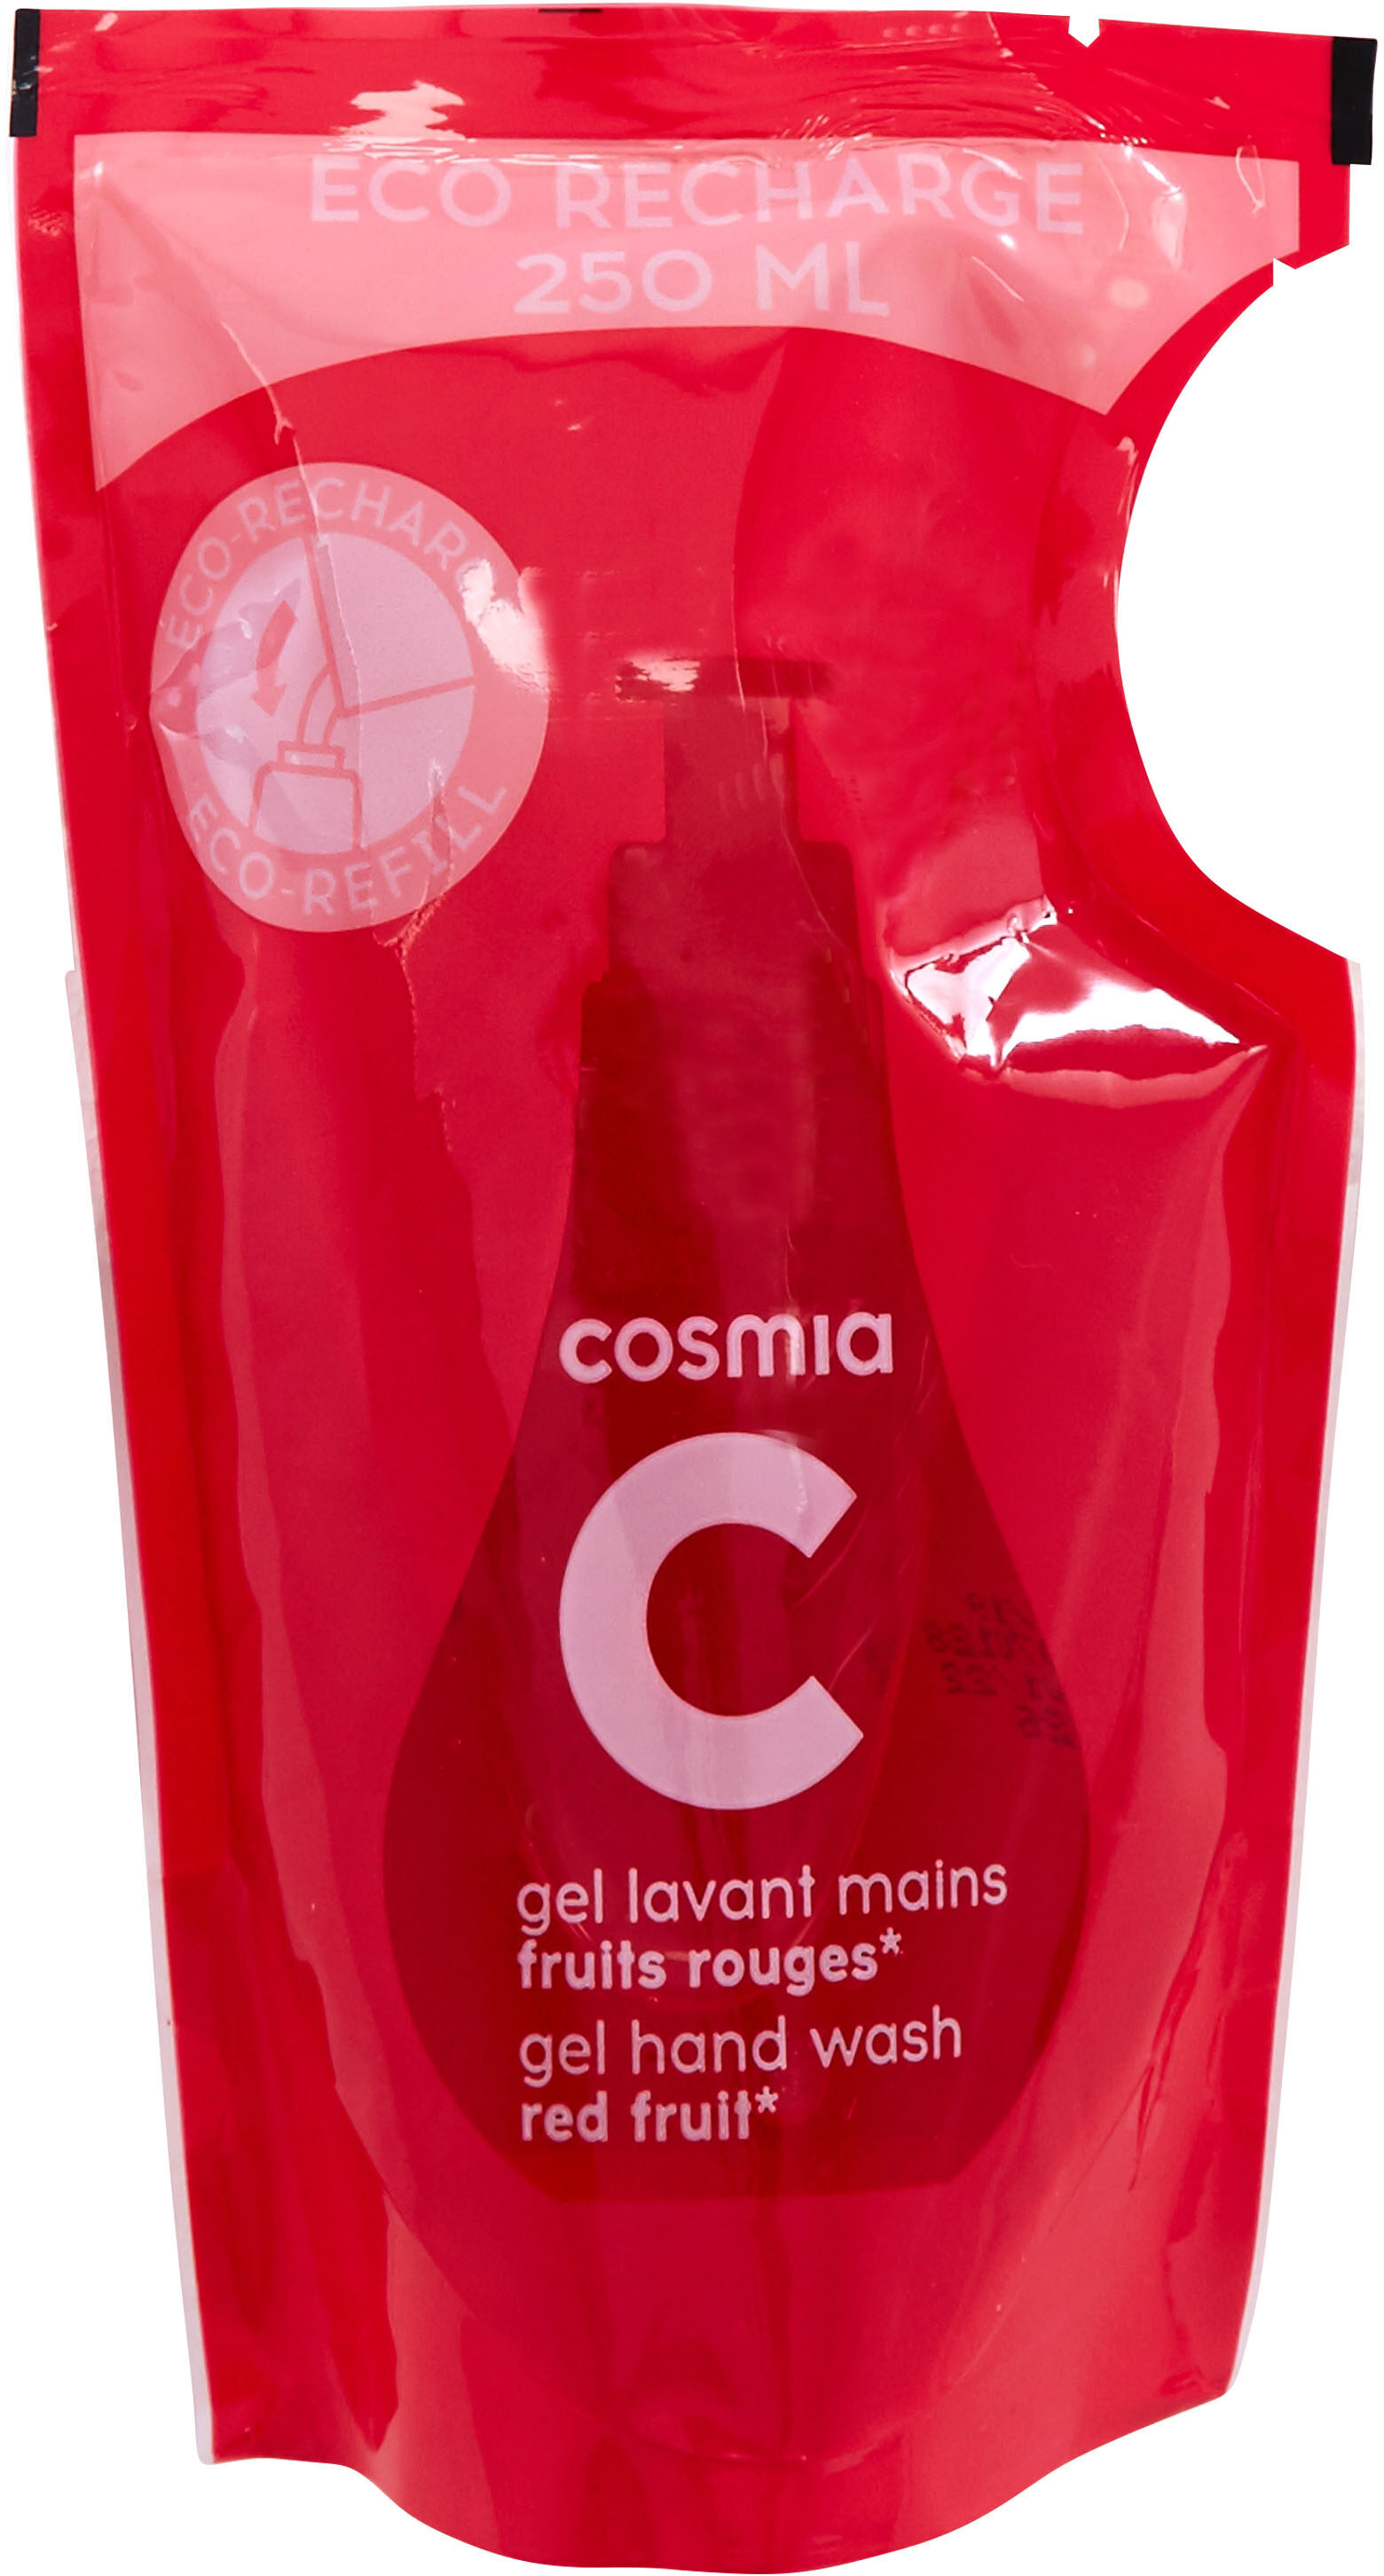 Cosmia - éco-recharge gel lavant mains - parfum fruits rouges* - tous types de peaux - 250ml - Tuote - fr